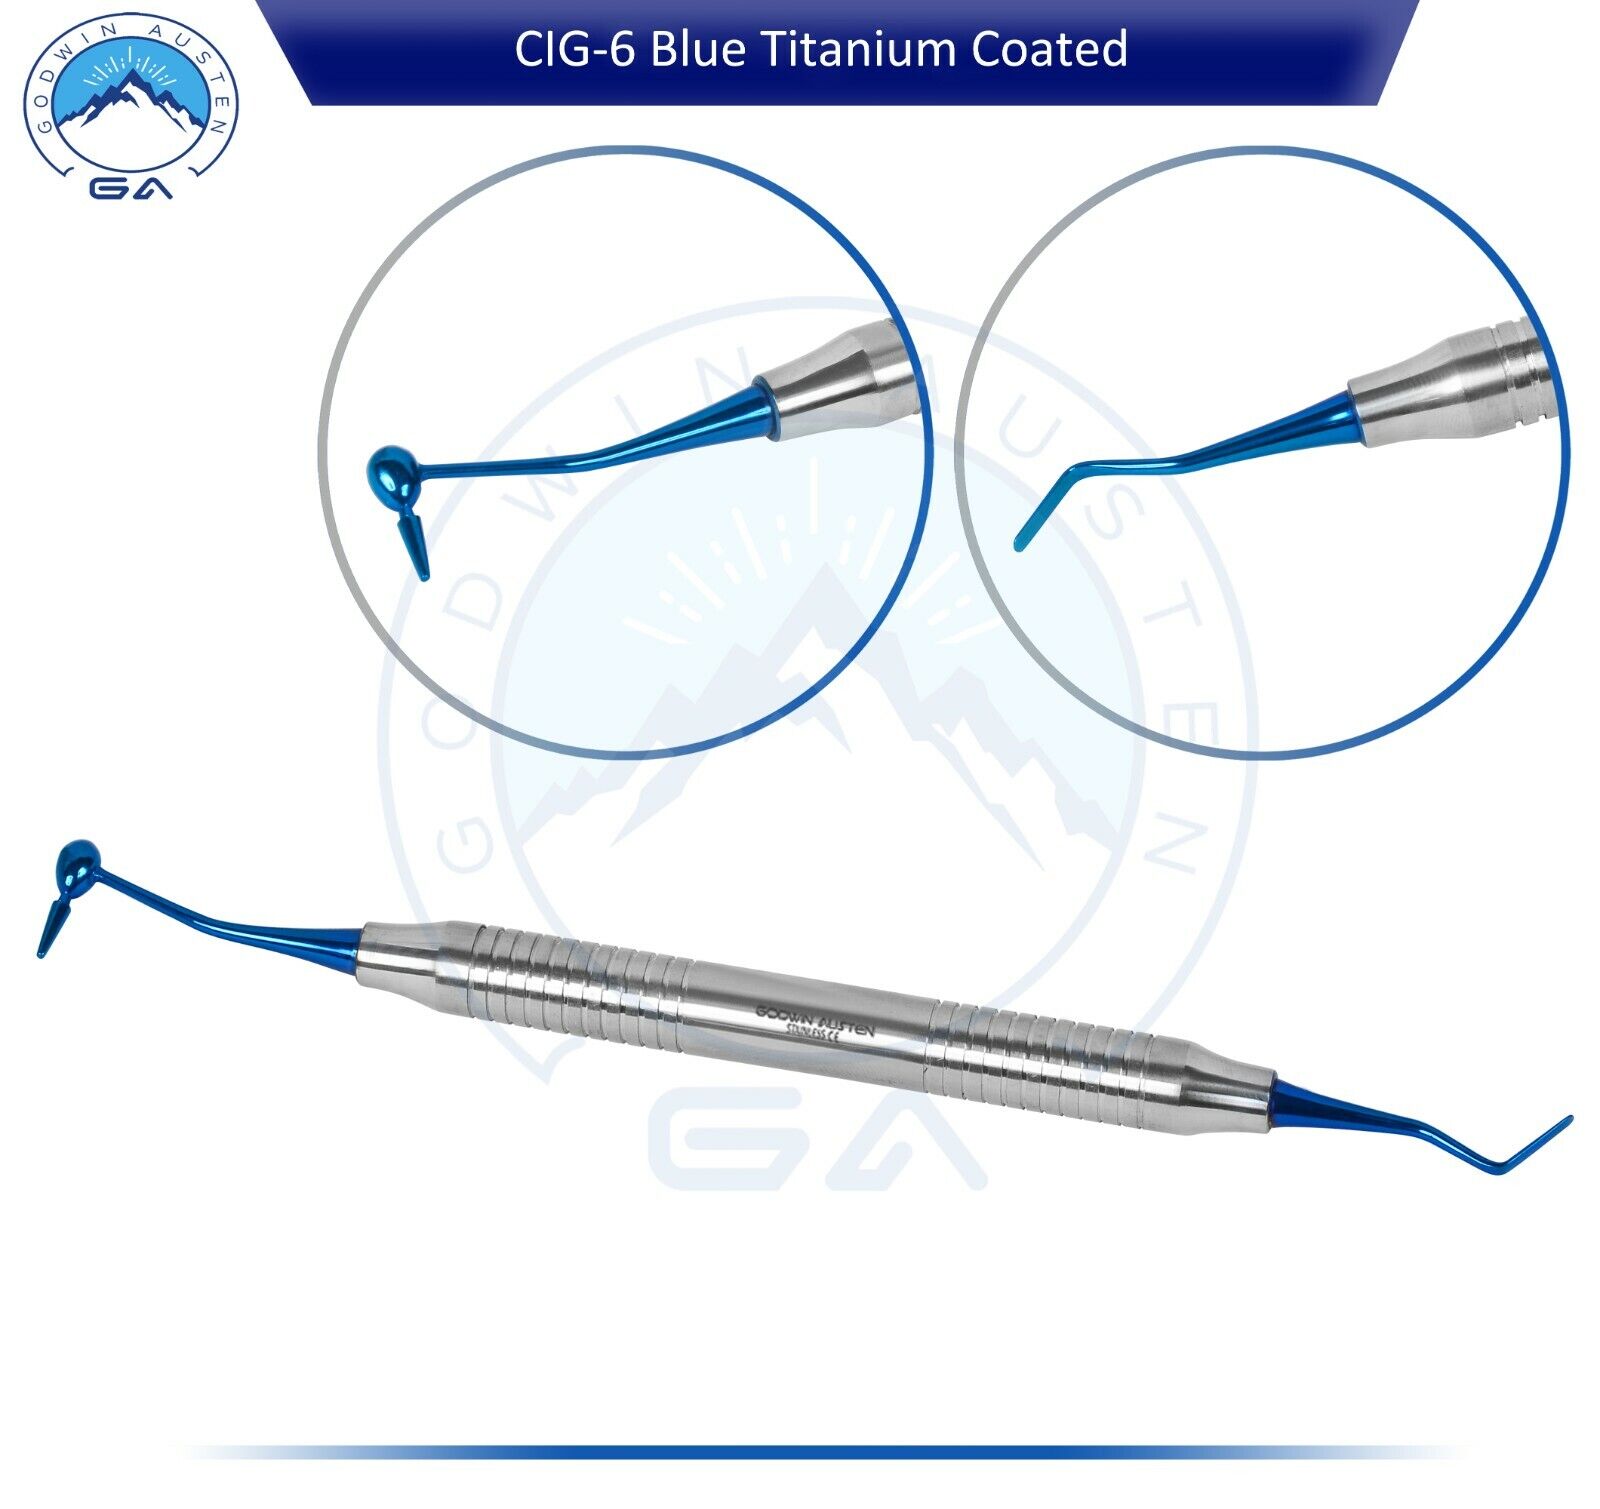 CIG-6 Blue Titanium Coated